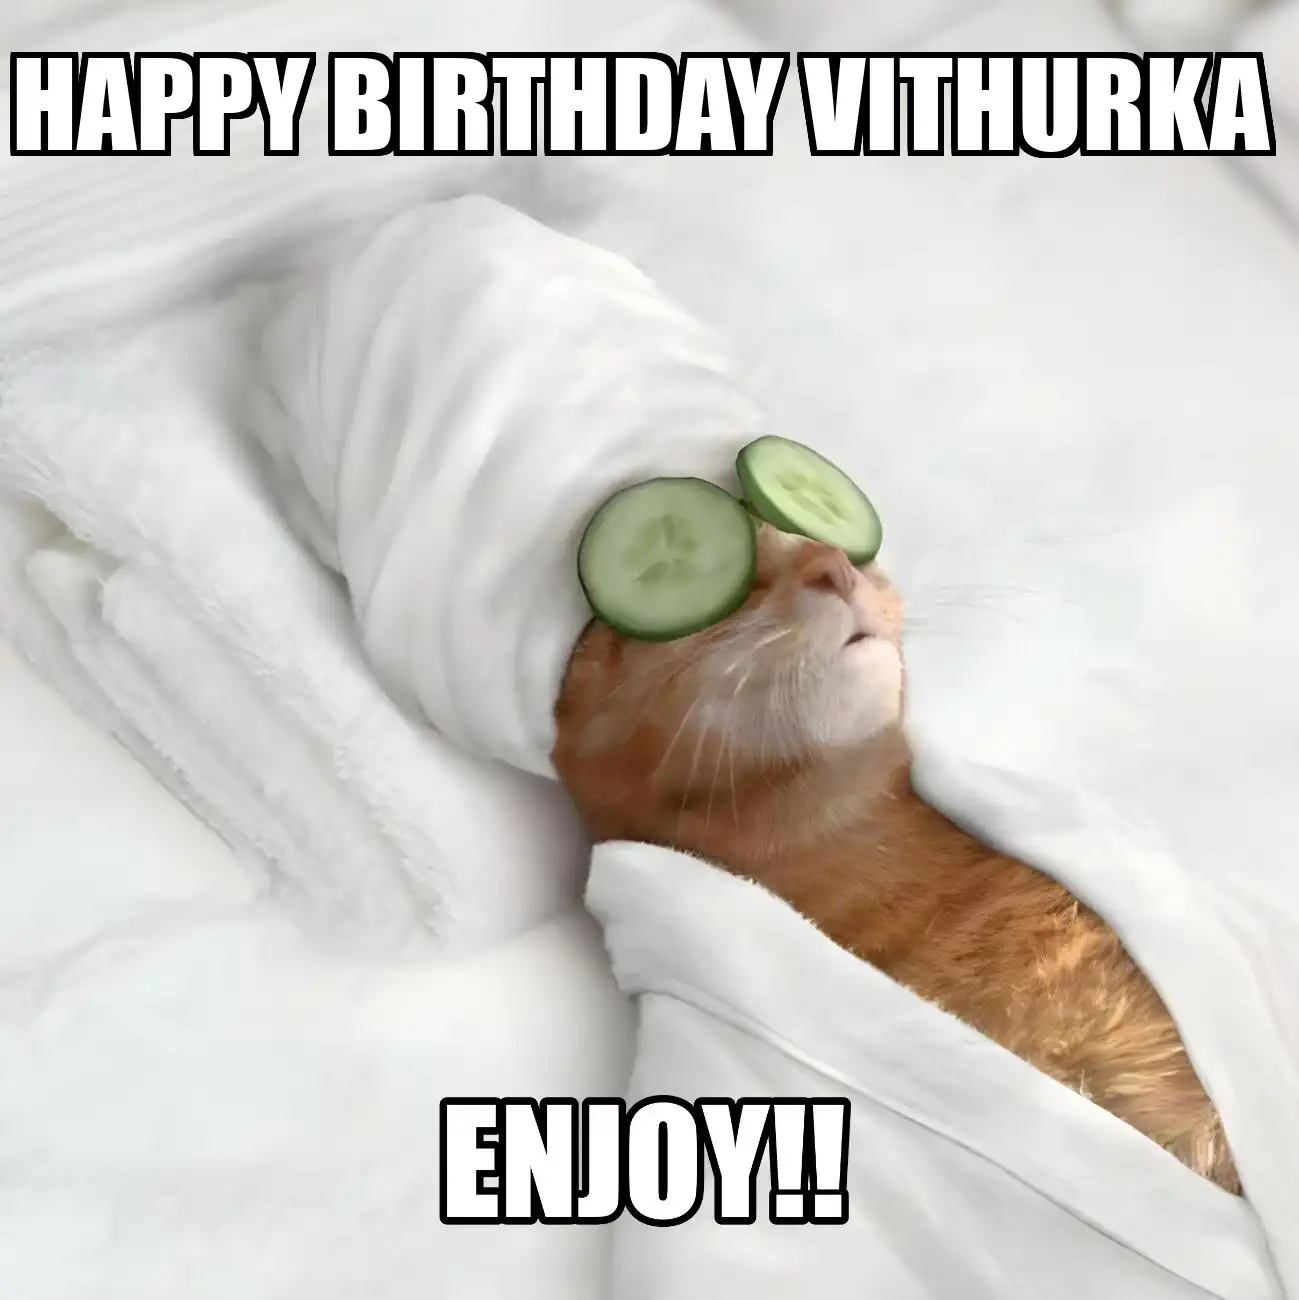 Happy Birthday Vithurka Enjoy Cat Meme